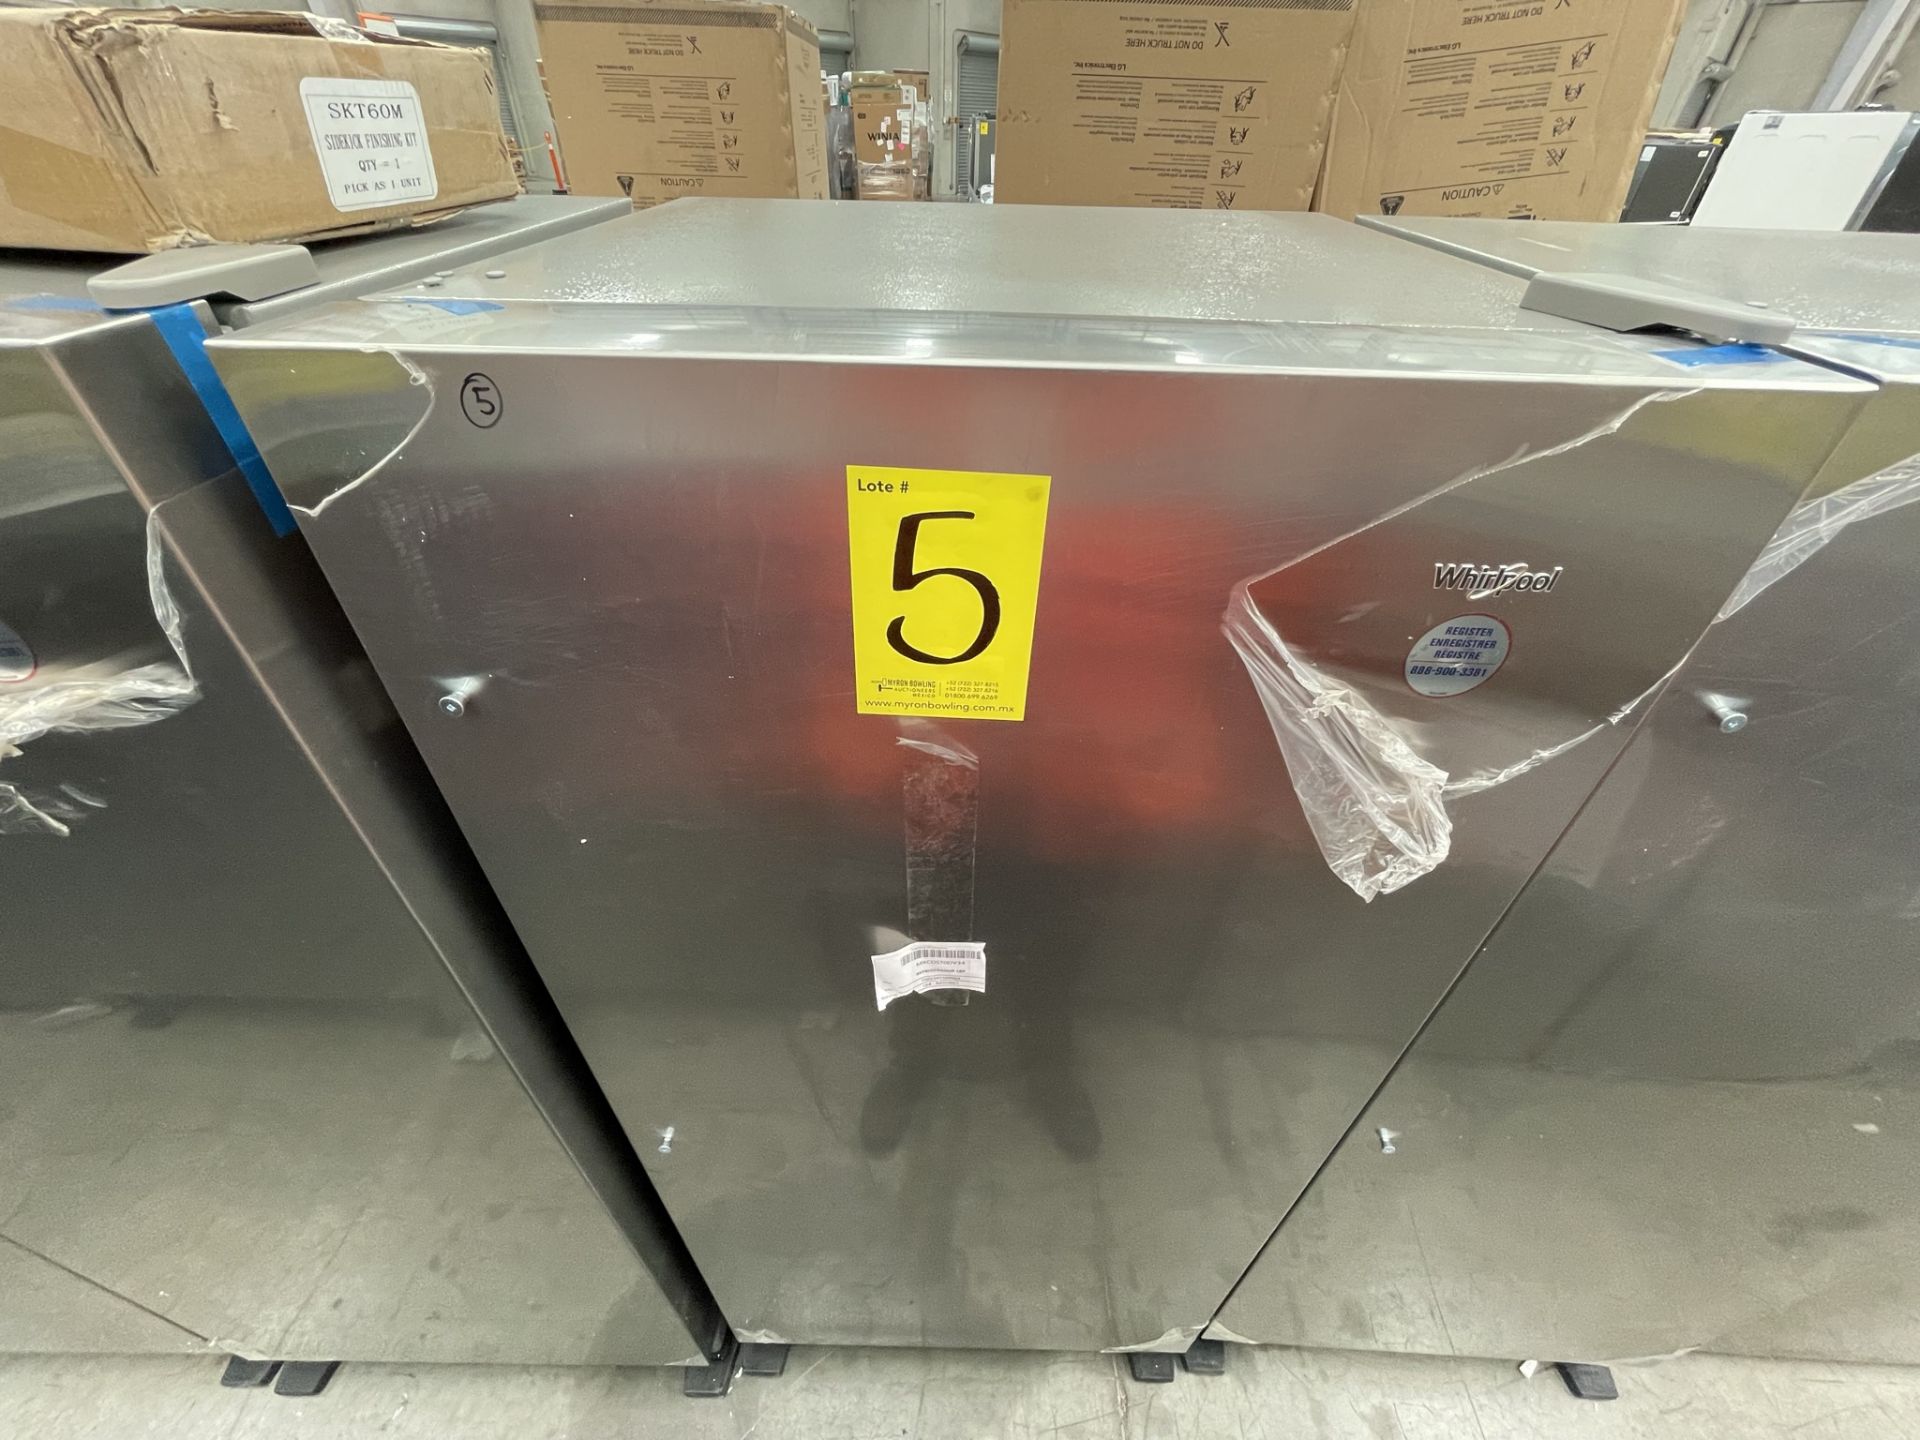 (EQUIPO NUEVO) 1 Refrigerador Marca WHIRLPOOL, Modelo WSR57R18DM, Serie 905375, Color GRIS, (Nuevo, - Image 2 of 8